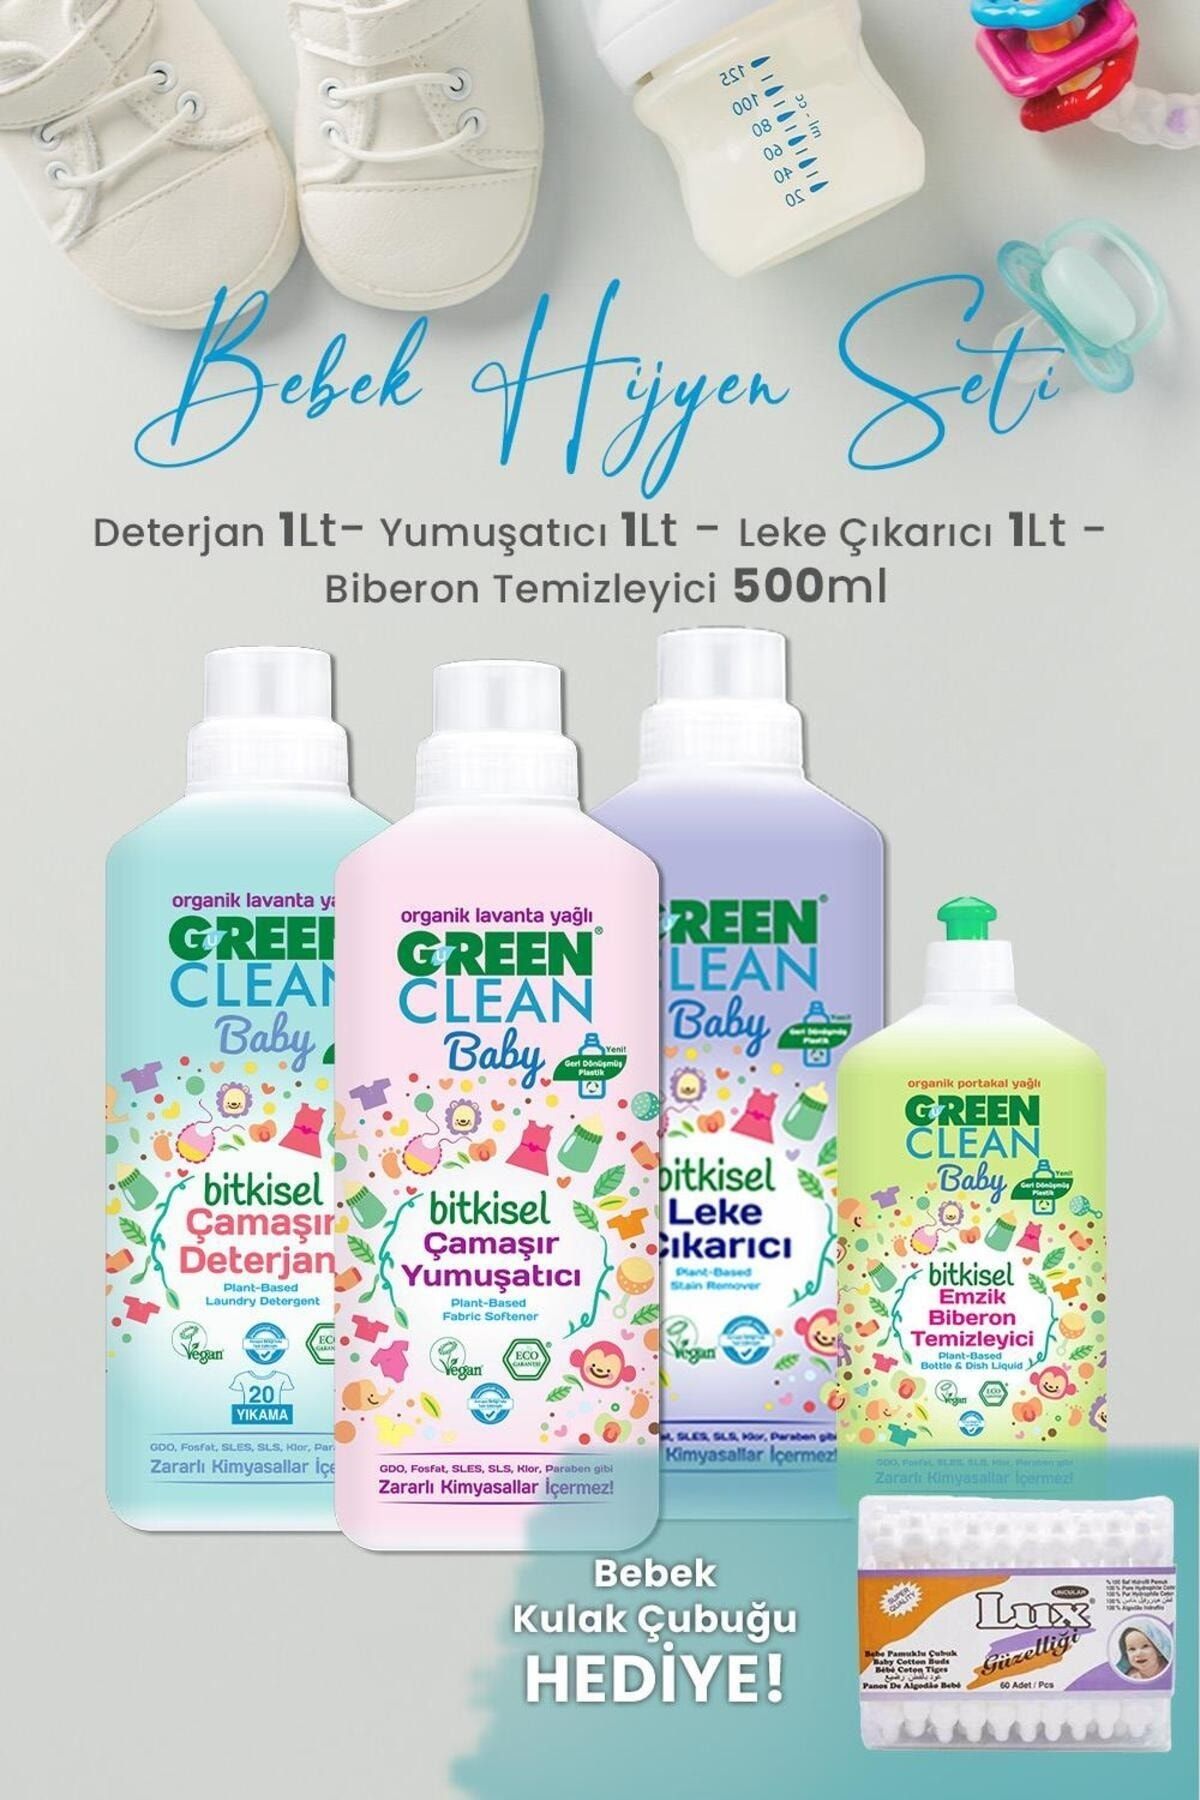 Green Clean U Green Clean Baby Çamaşır Deterjanı, Yumuşatıcı ve Leke Çıkarıcı 1 L, Biberon Temizleyici 500ml ve